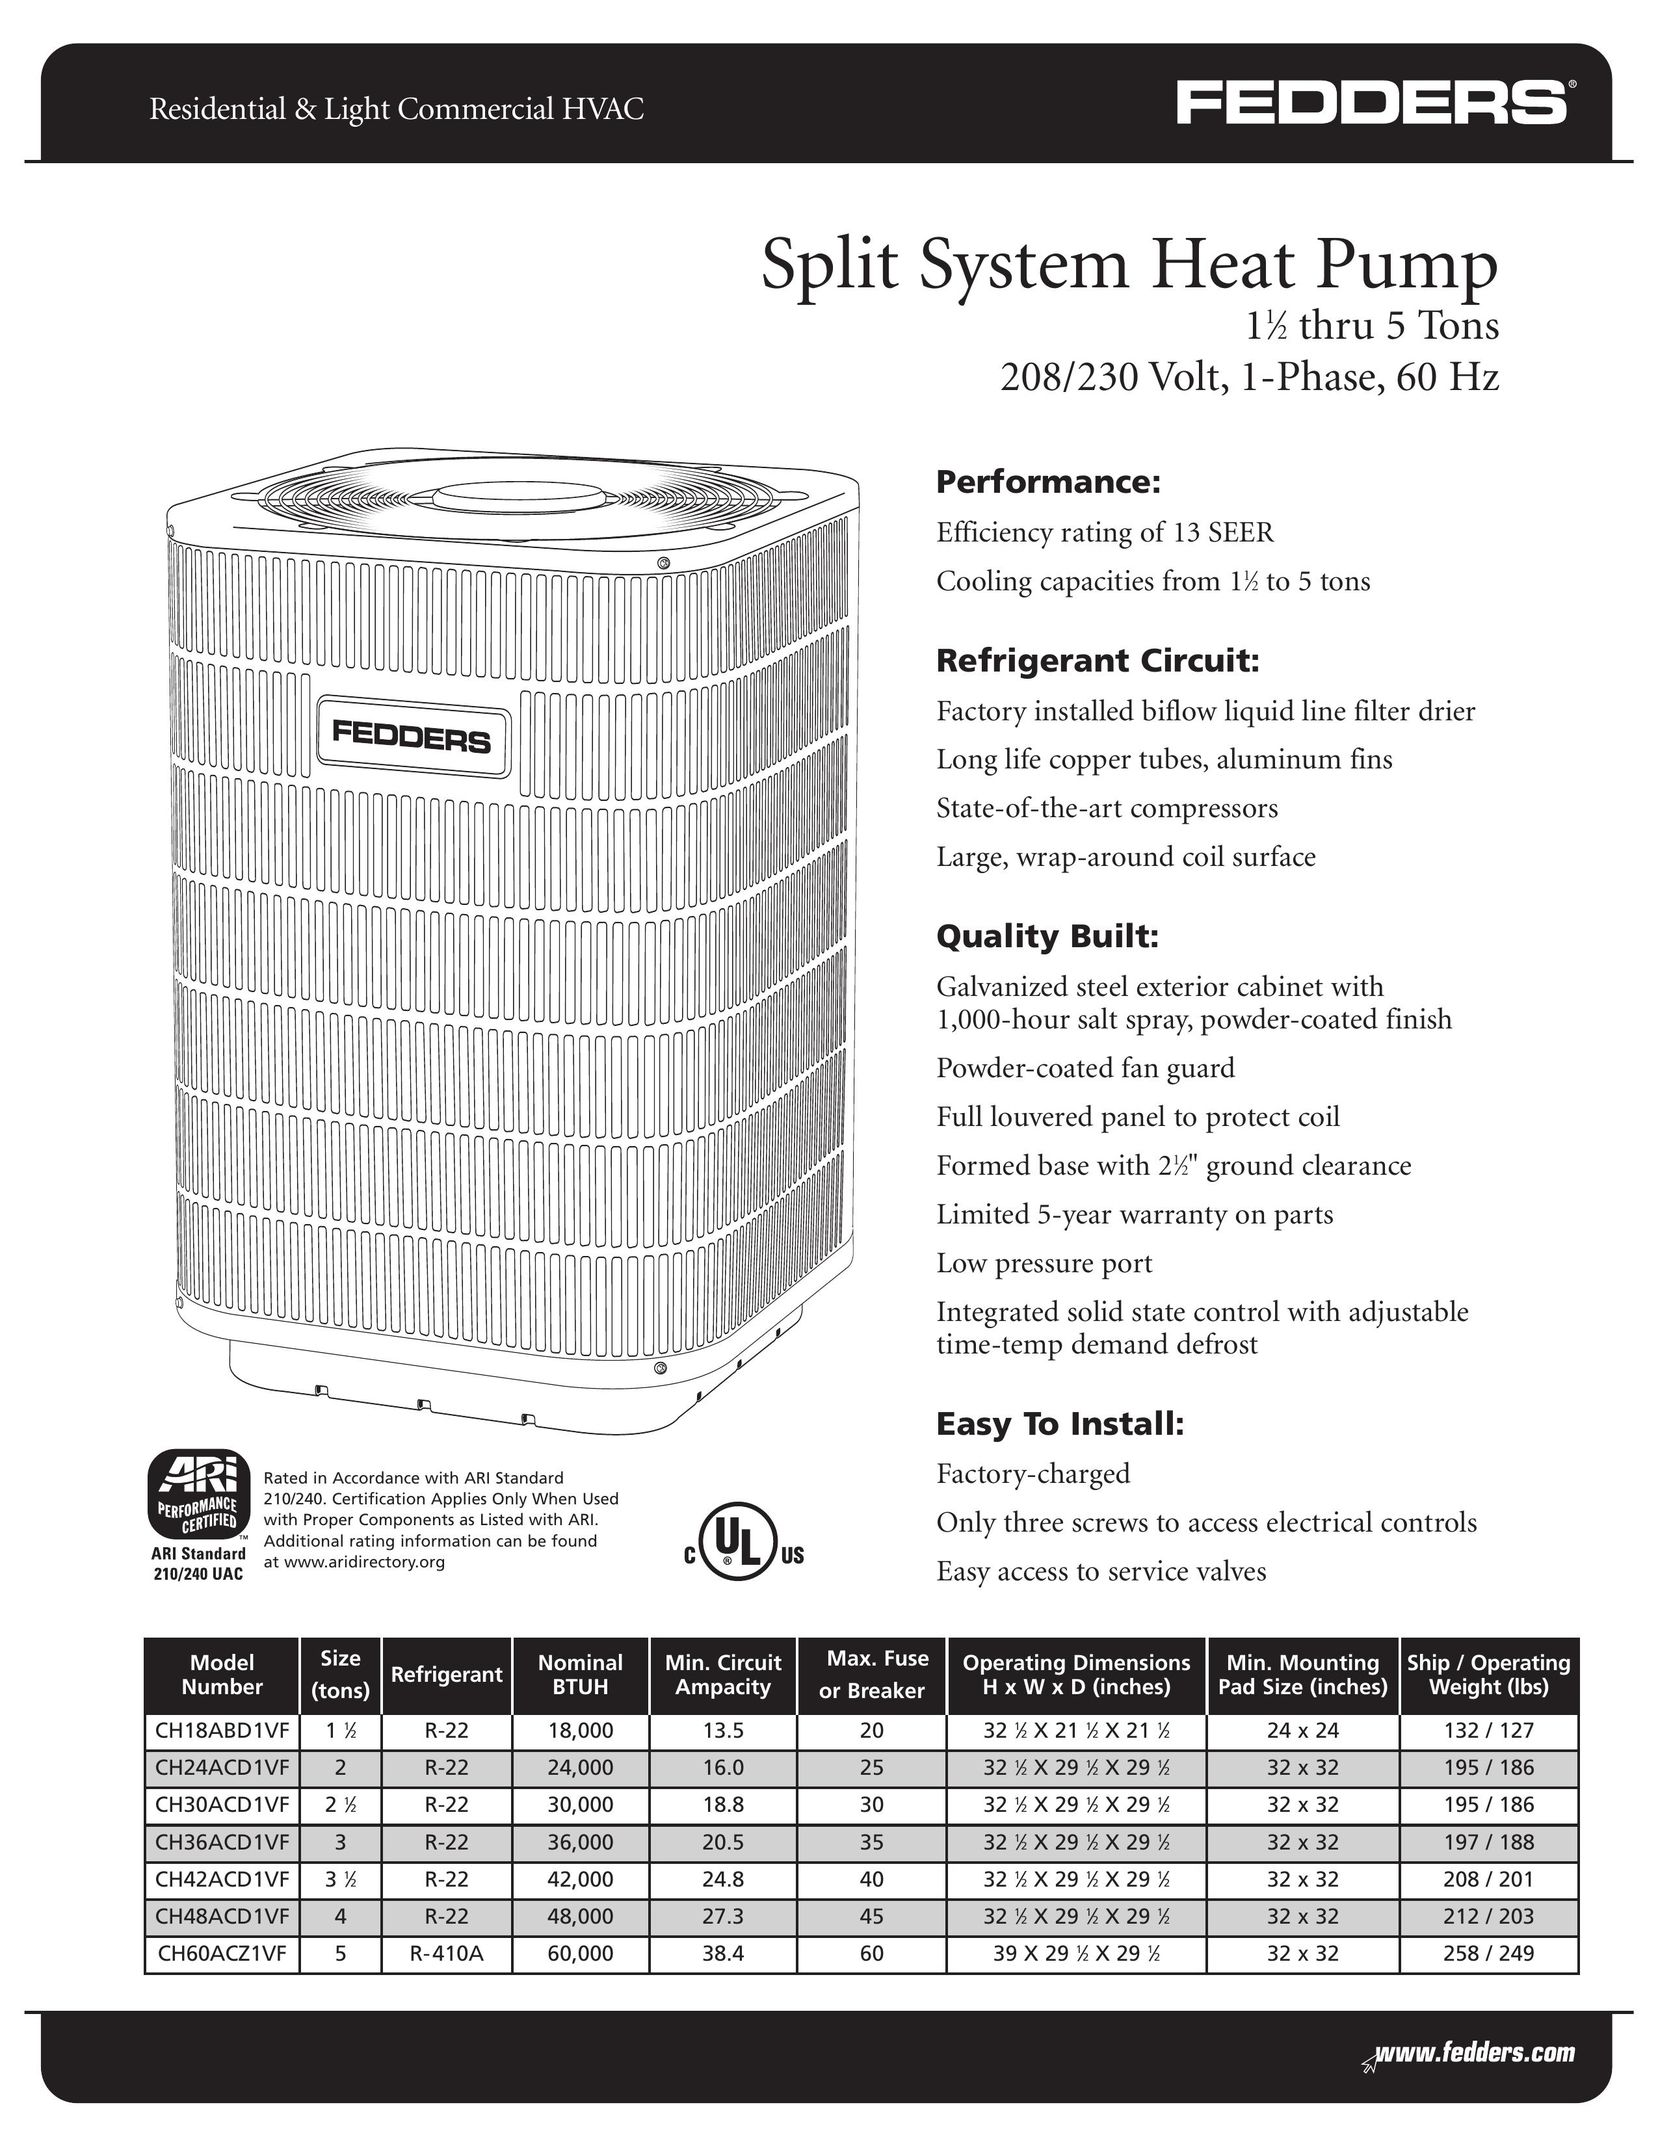 Fedders CH48ACD1VF Heat Pump User Manual